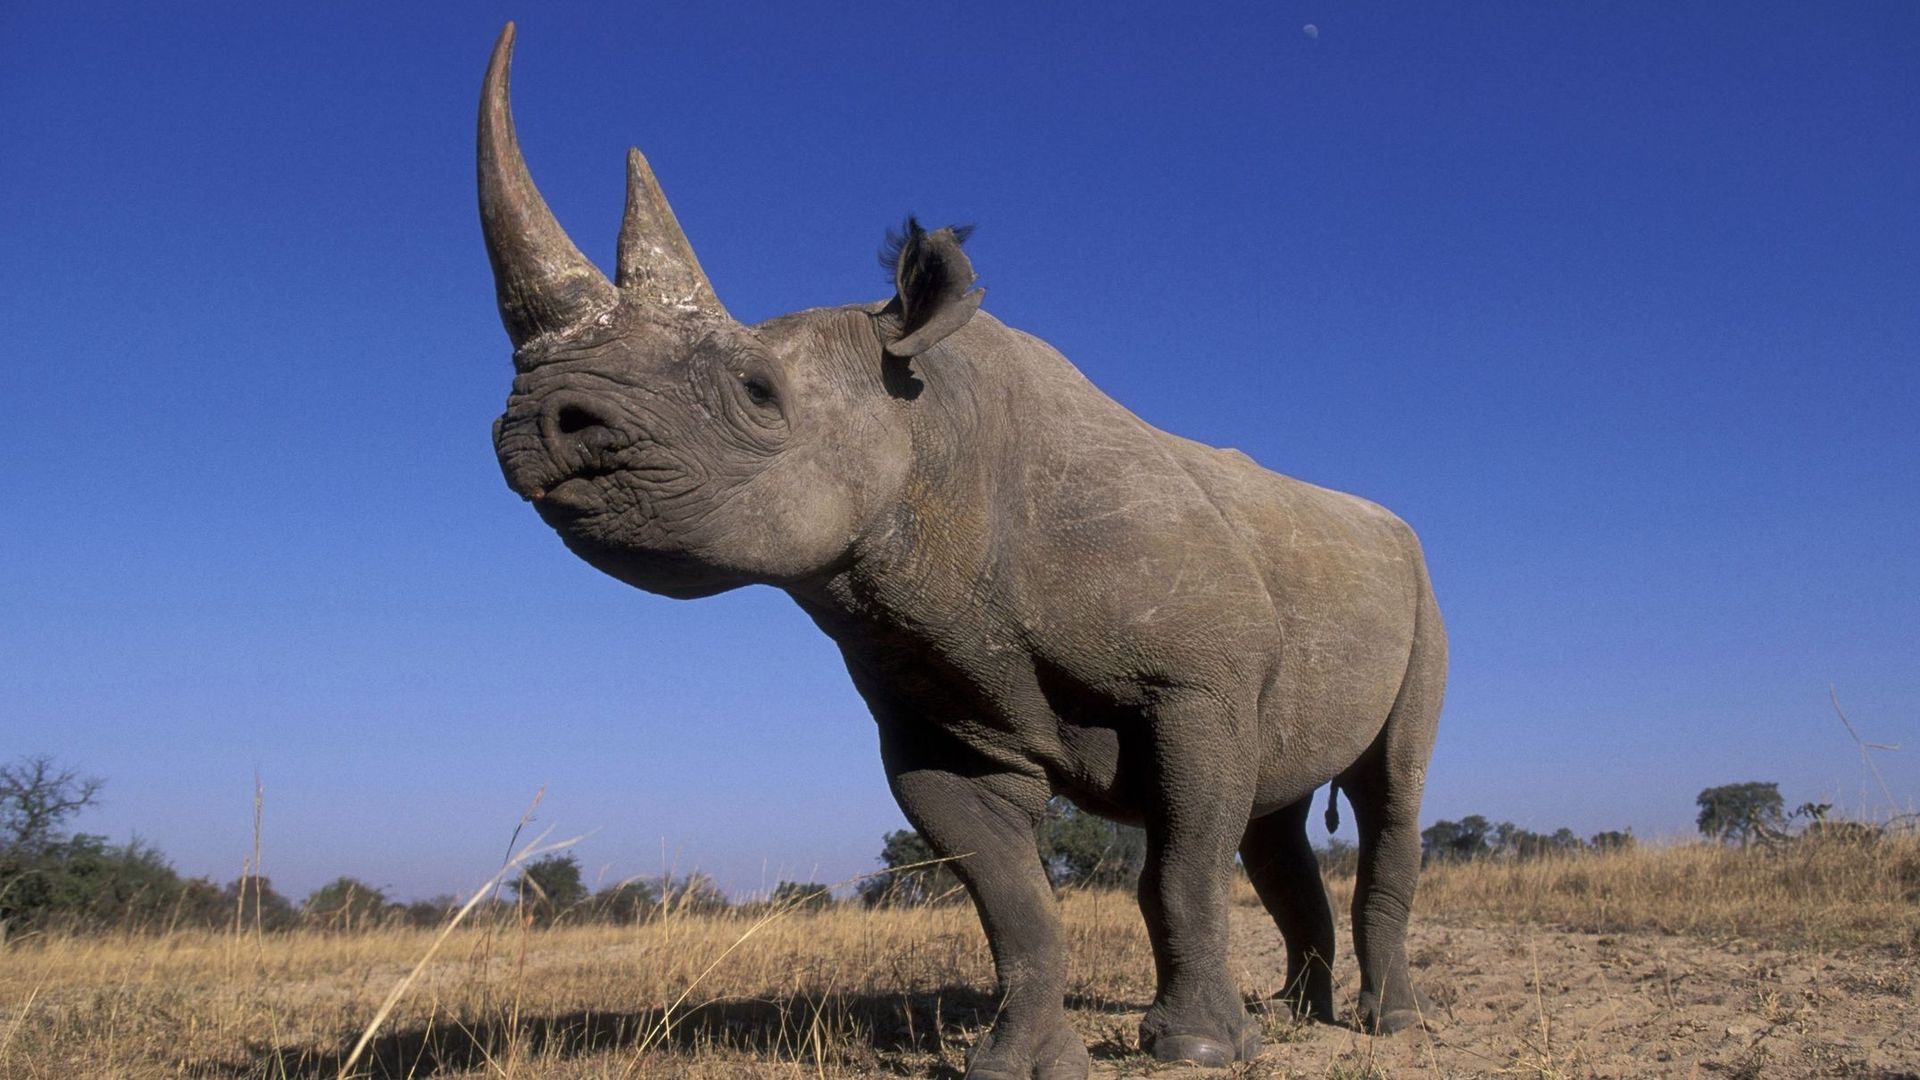 Bilan mitigé pour la conservation des rhinocéros, selon l'UICN.